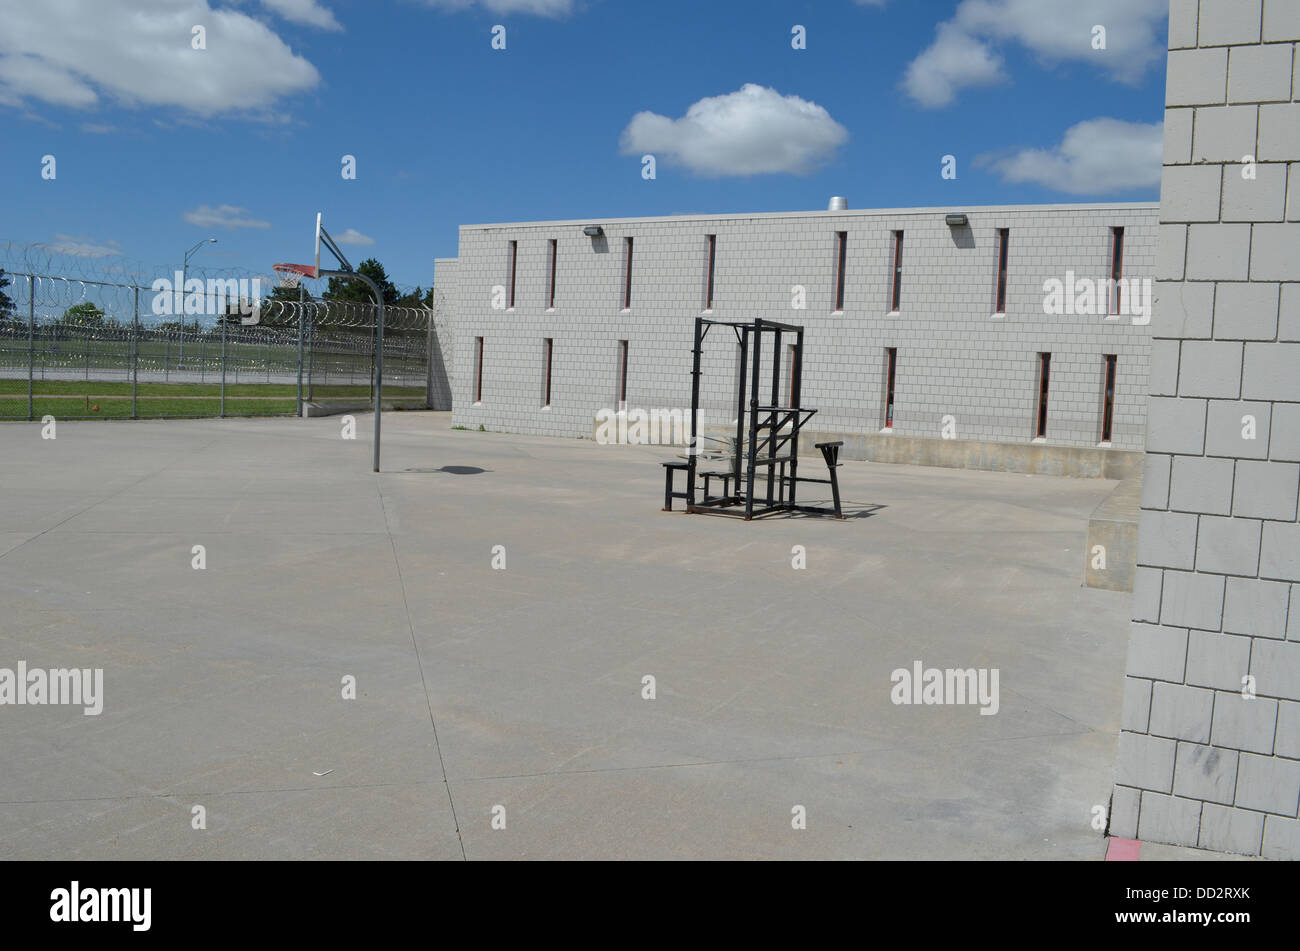 Eingezäunten Garten am amerikanischen Hochsicherheitsgefängnis. Hier dürfen Häftlinge außerhalb zu laufen, trainieren und Kontakte zu knüpfen. Stockfoto